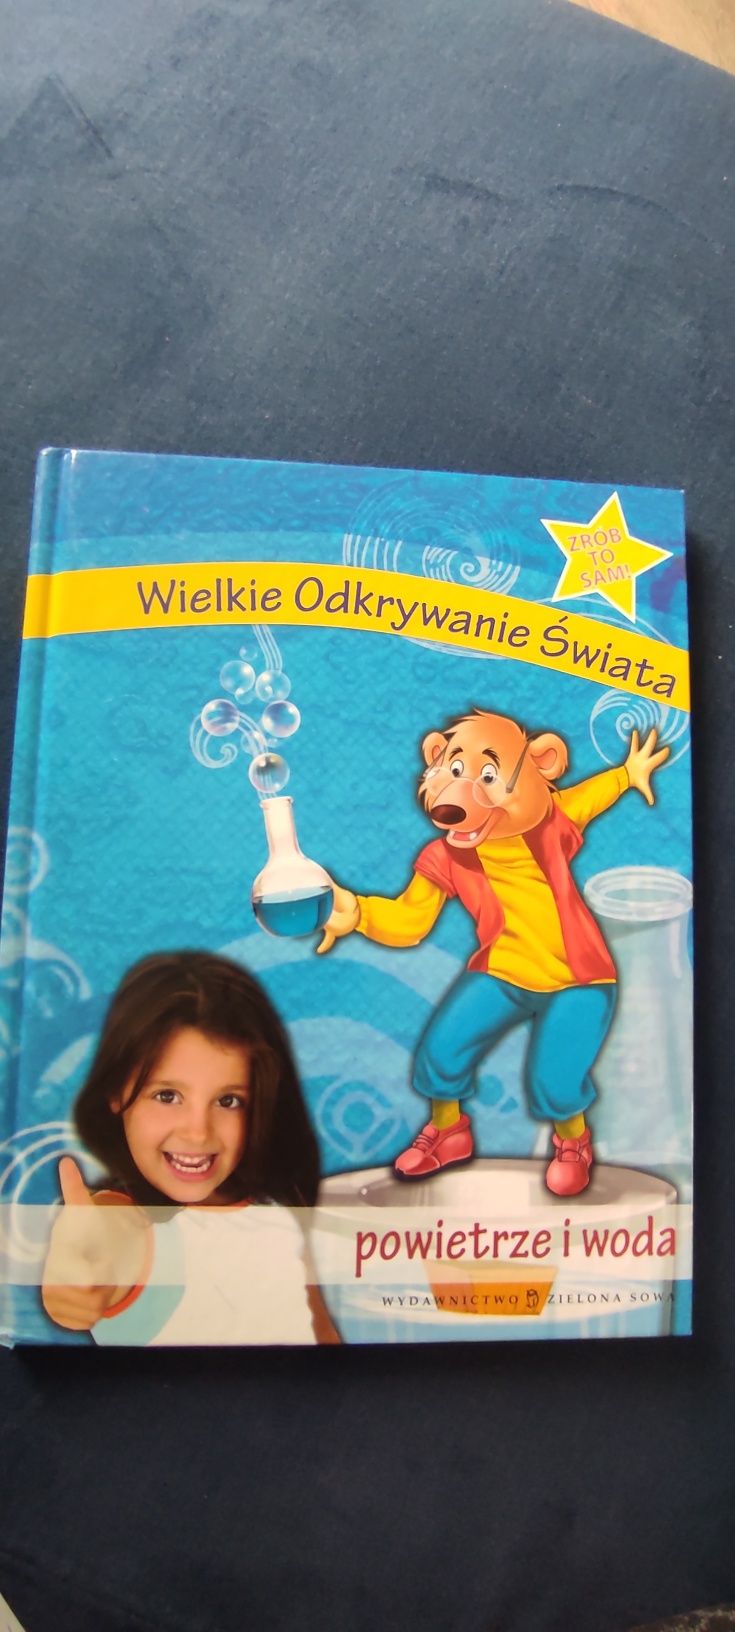 Książka dla dzieci "Wielkie Odkrywanie Świata - powietrze i woda""